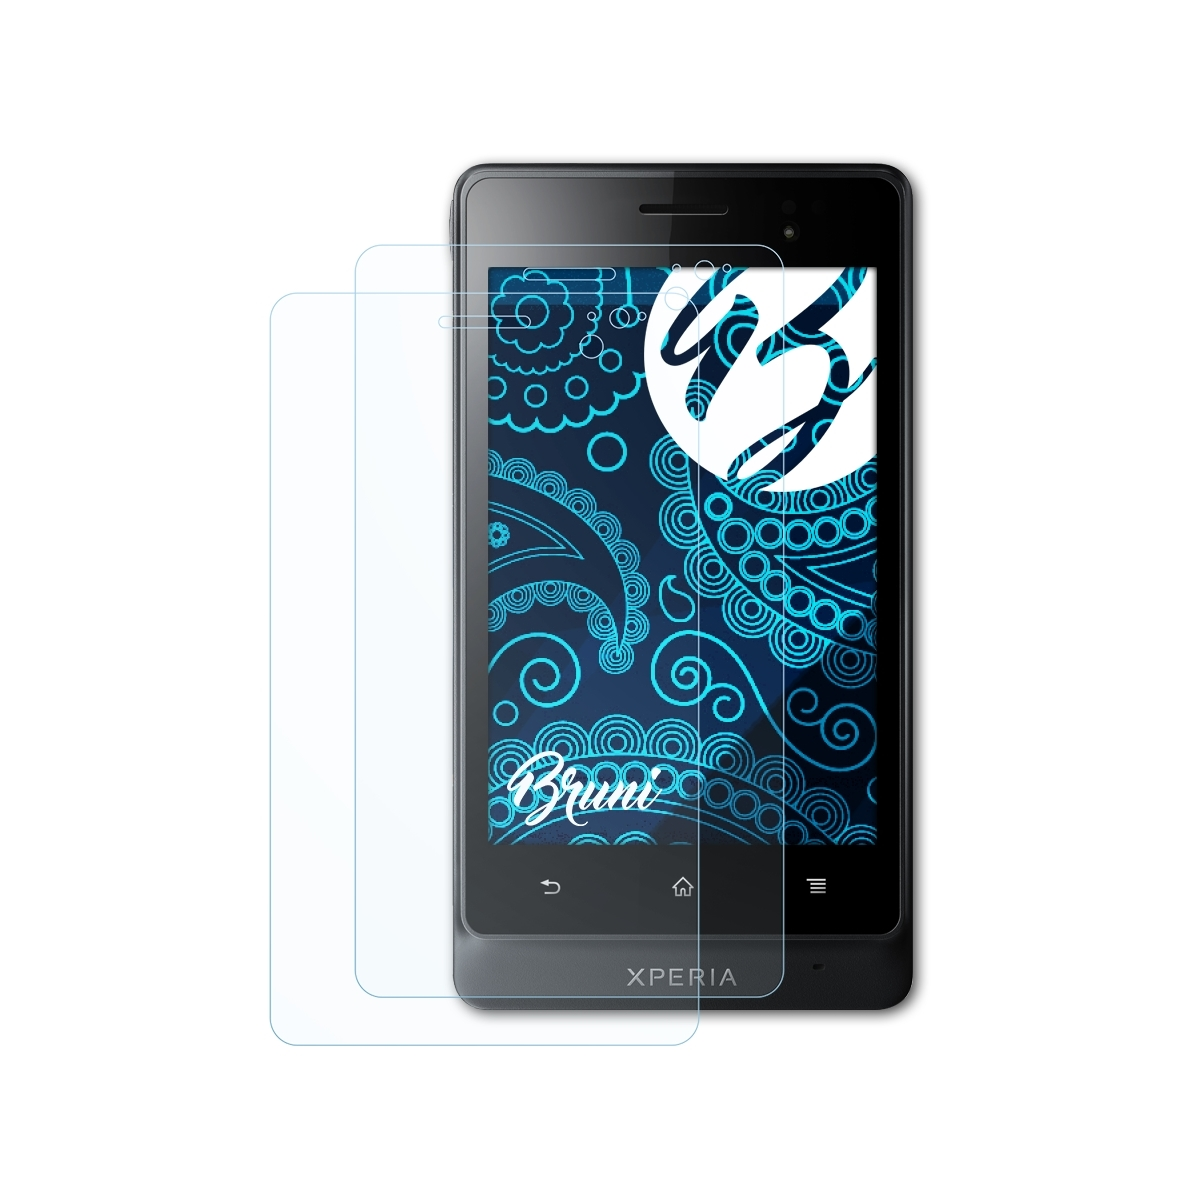 BRUNI 2x Basics-Clear Schutzfolie(für Sony Go) Xperia